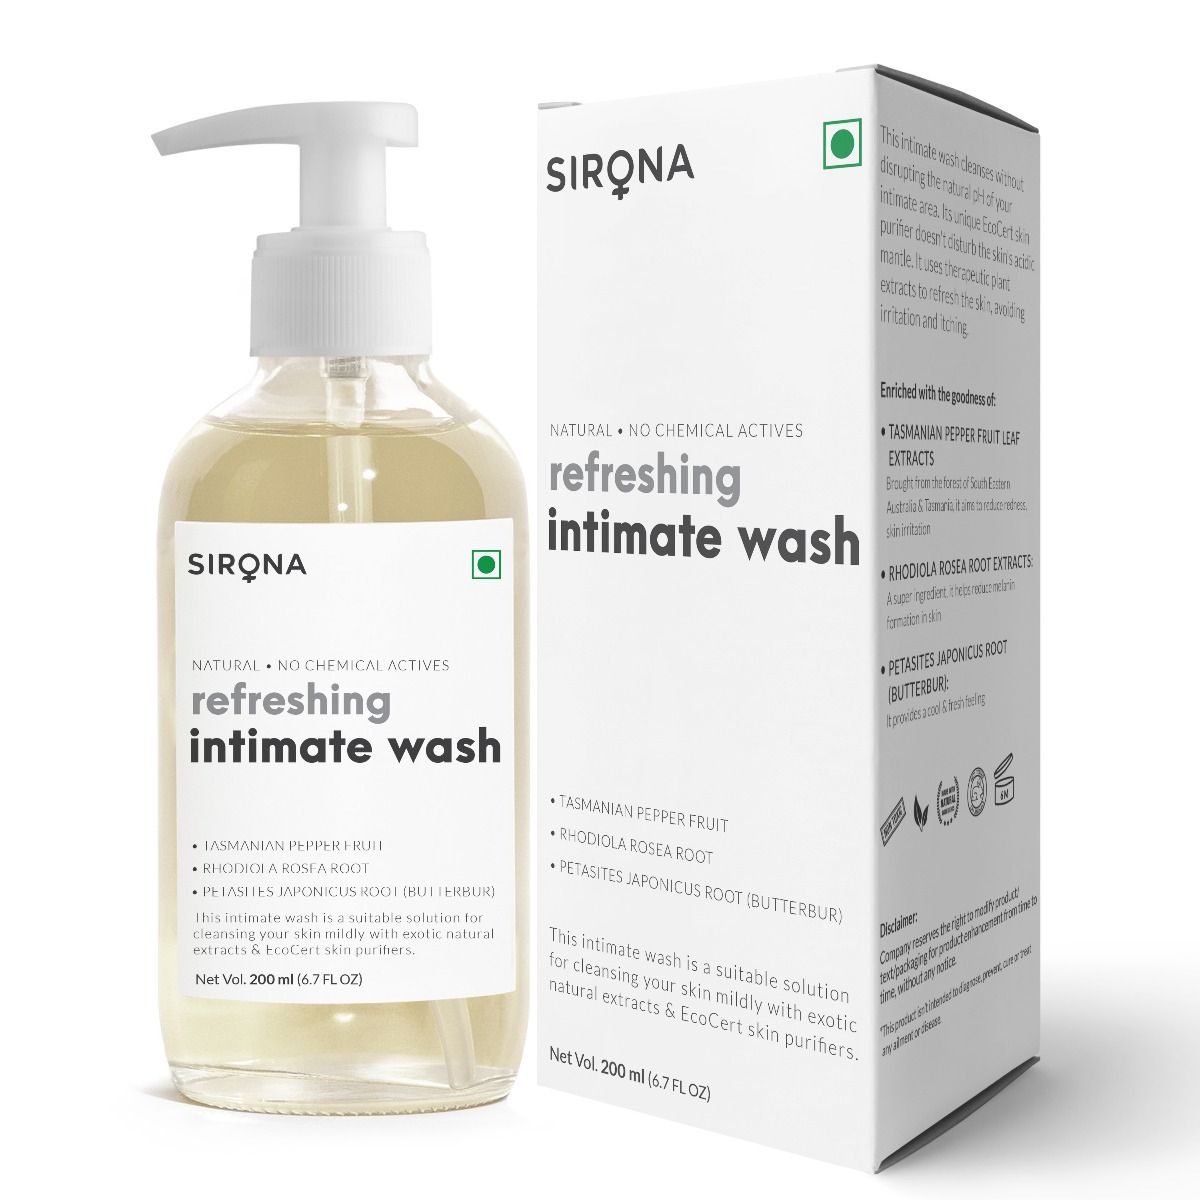 Buy Sirona Refreshing Intimate Wash, 200 ml Online